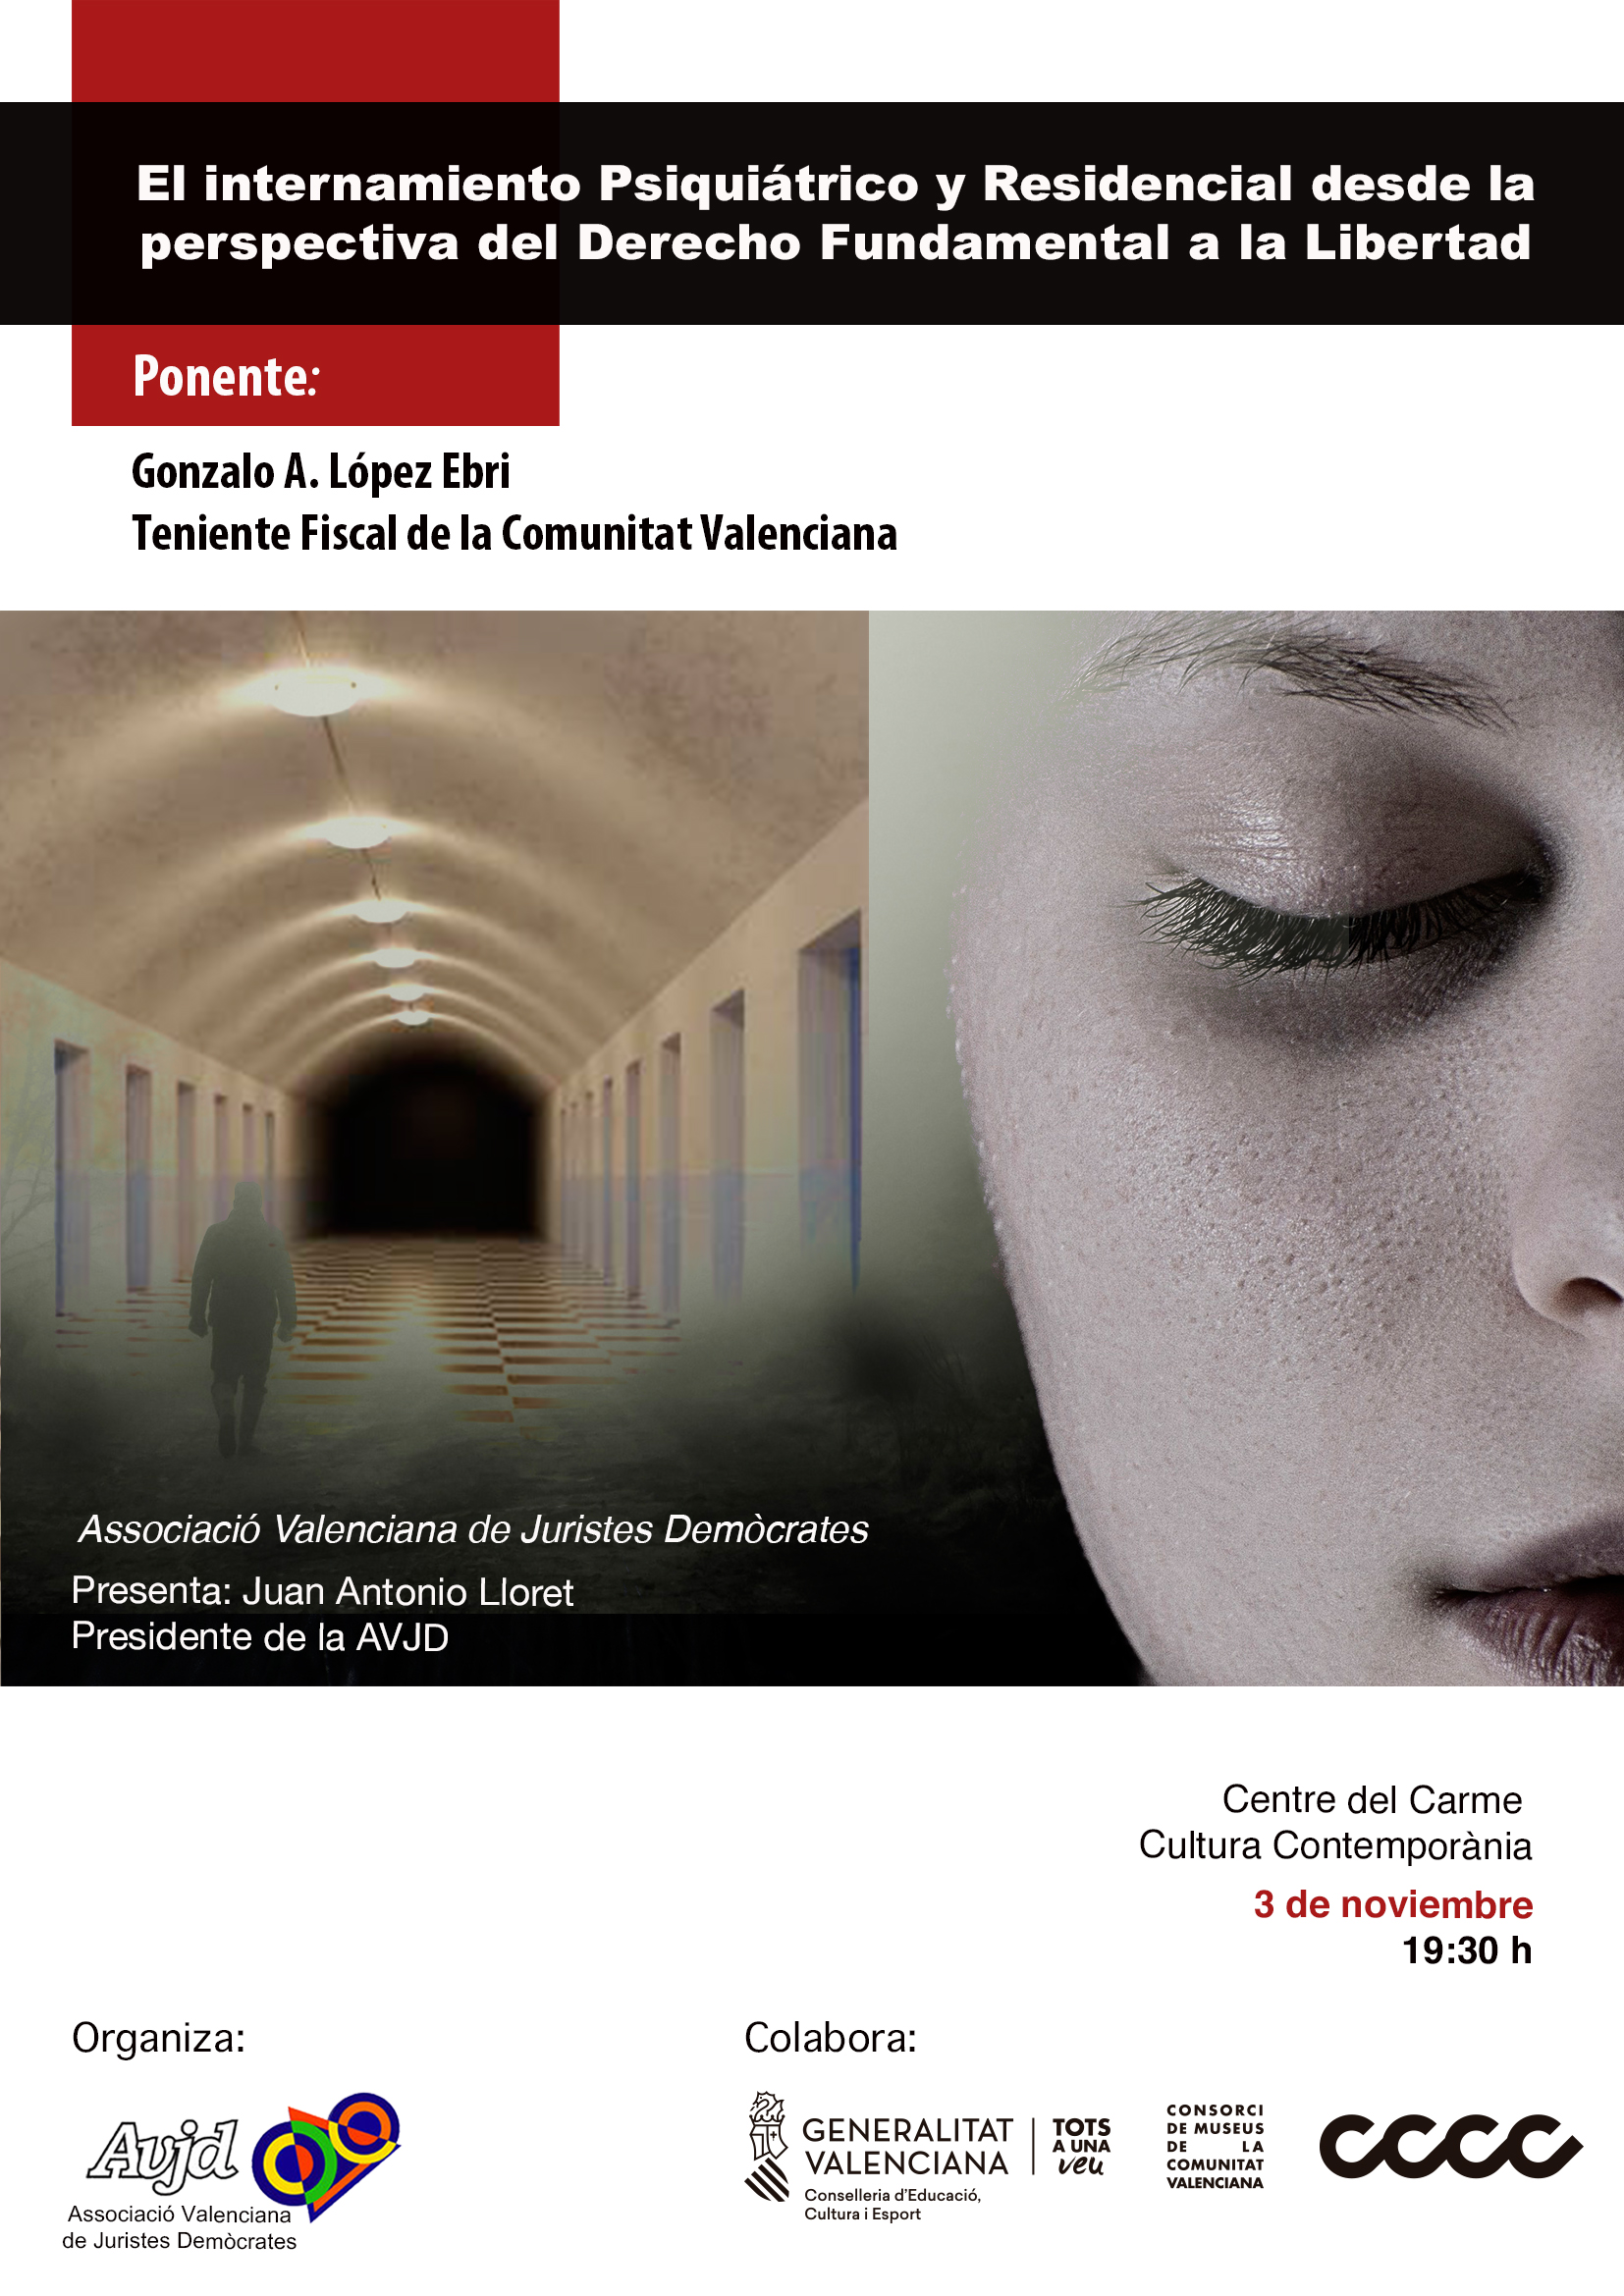 Conferencia de Gonzalo A. López Ebri. El internamiento psiquiátrico y residencial. 3 de noviembre 19:30 hs Centre de El Carme